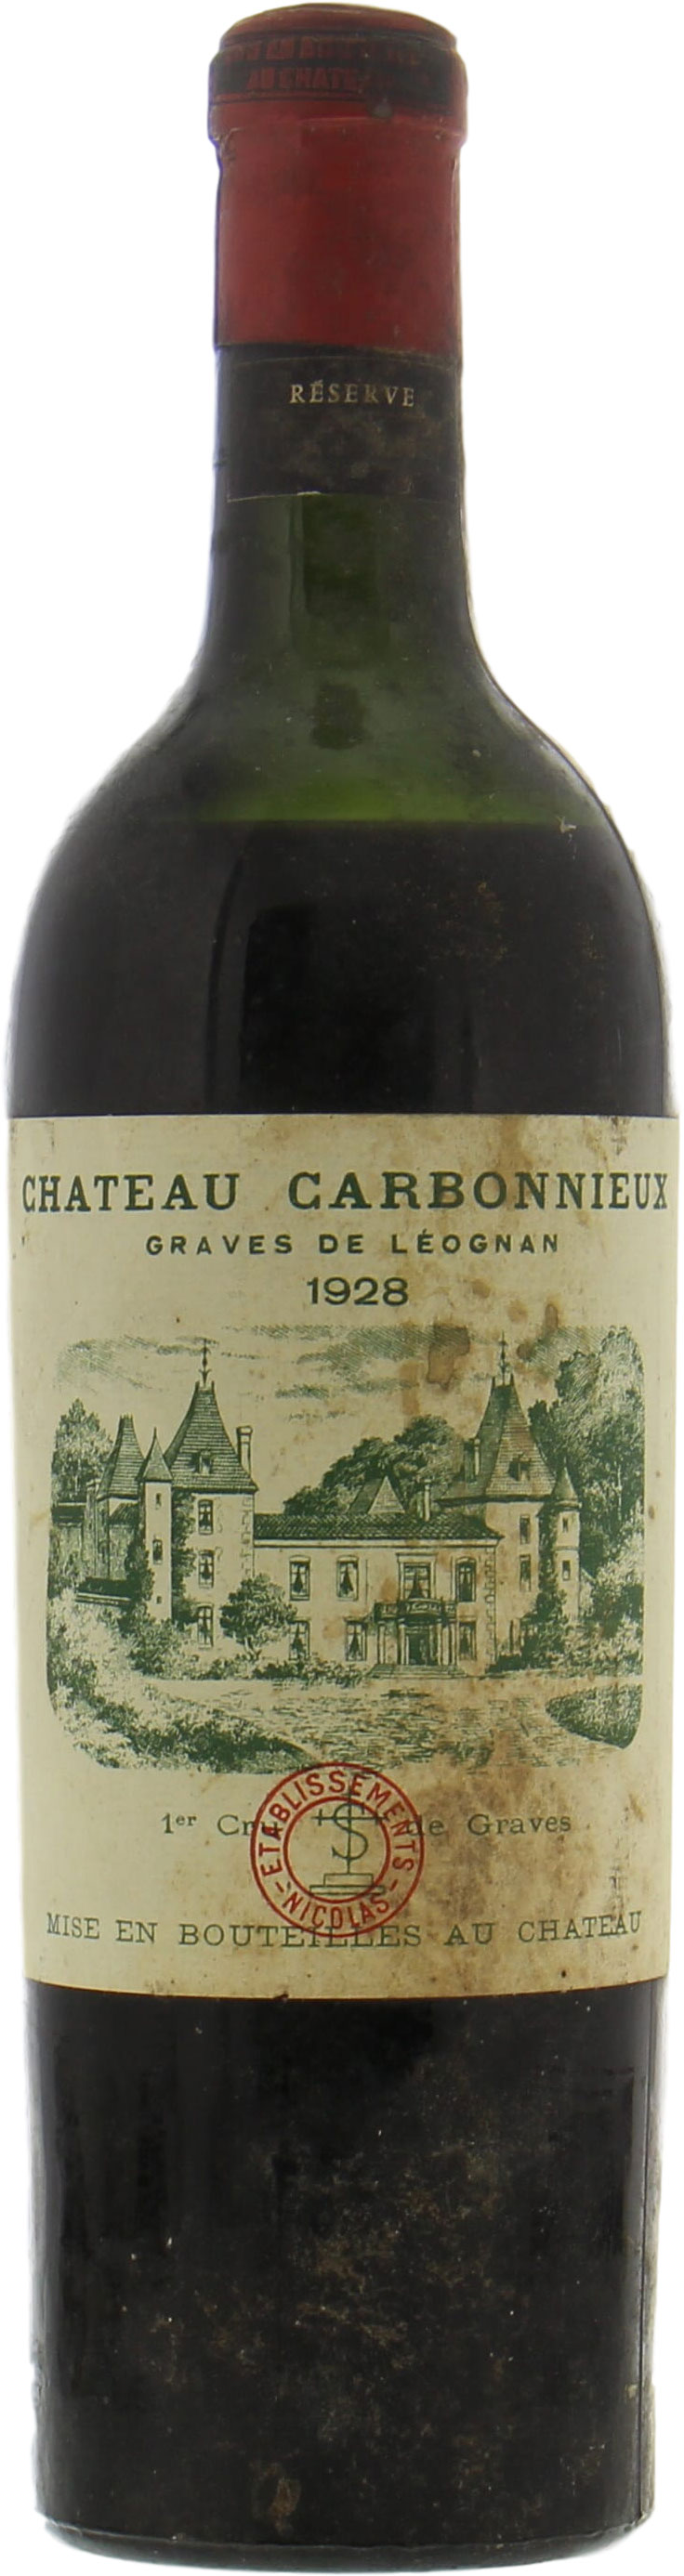 Chateau Carbonnieux - Chateau Carbonnieux 1928 Perfect